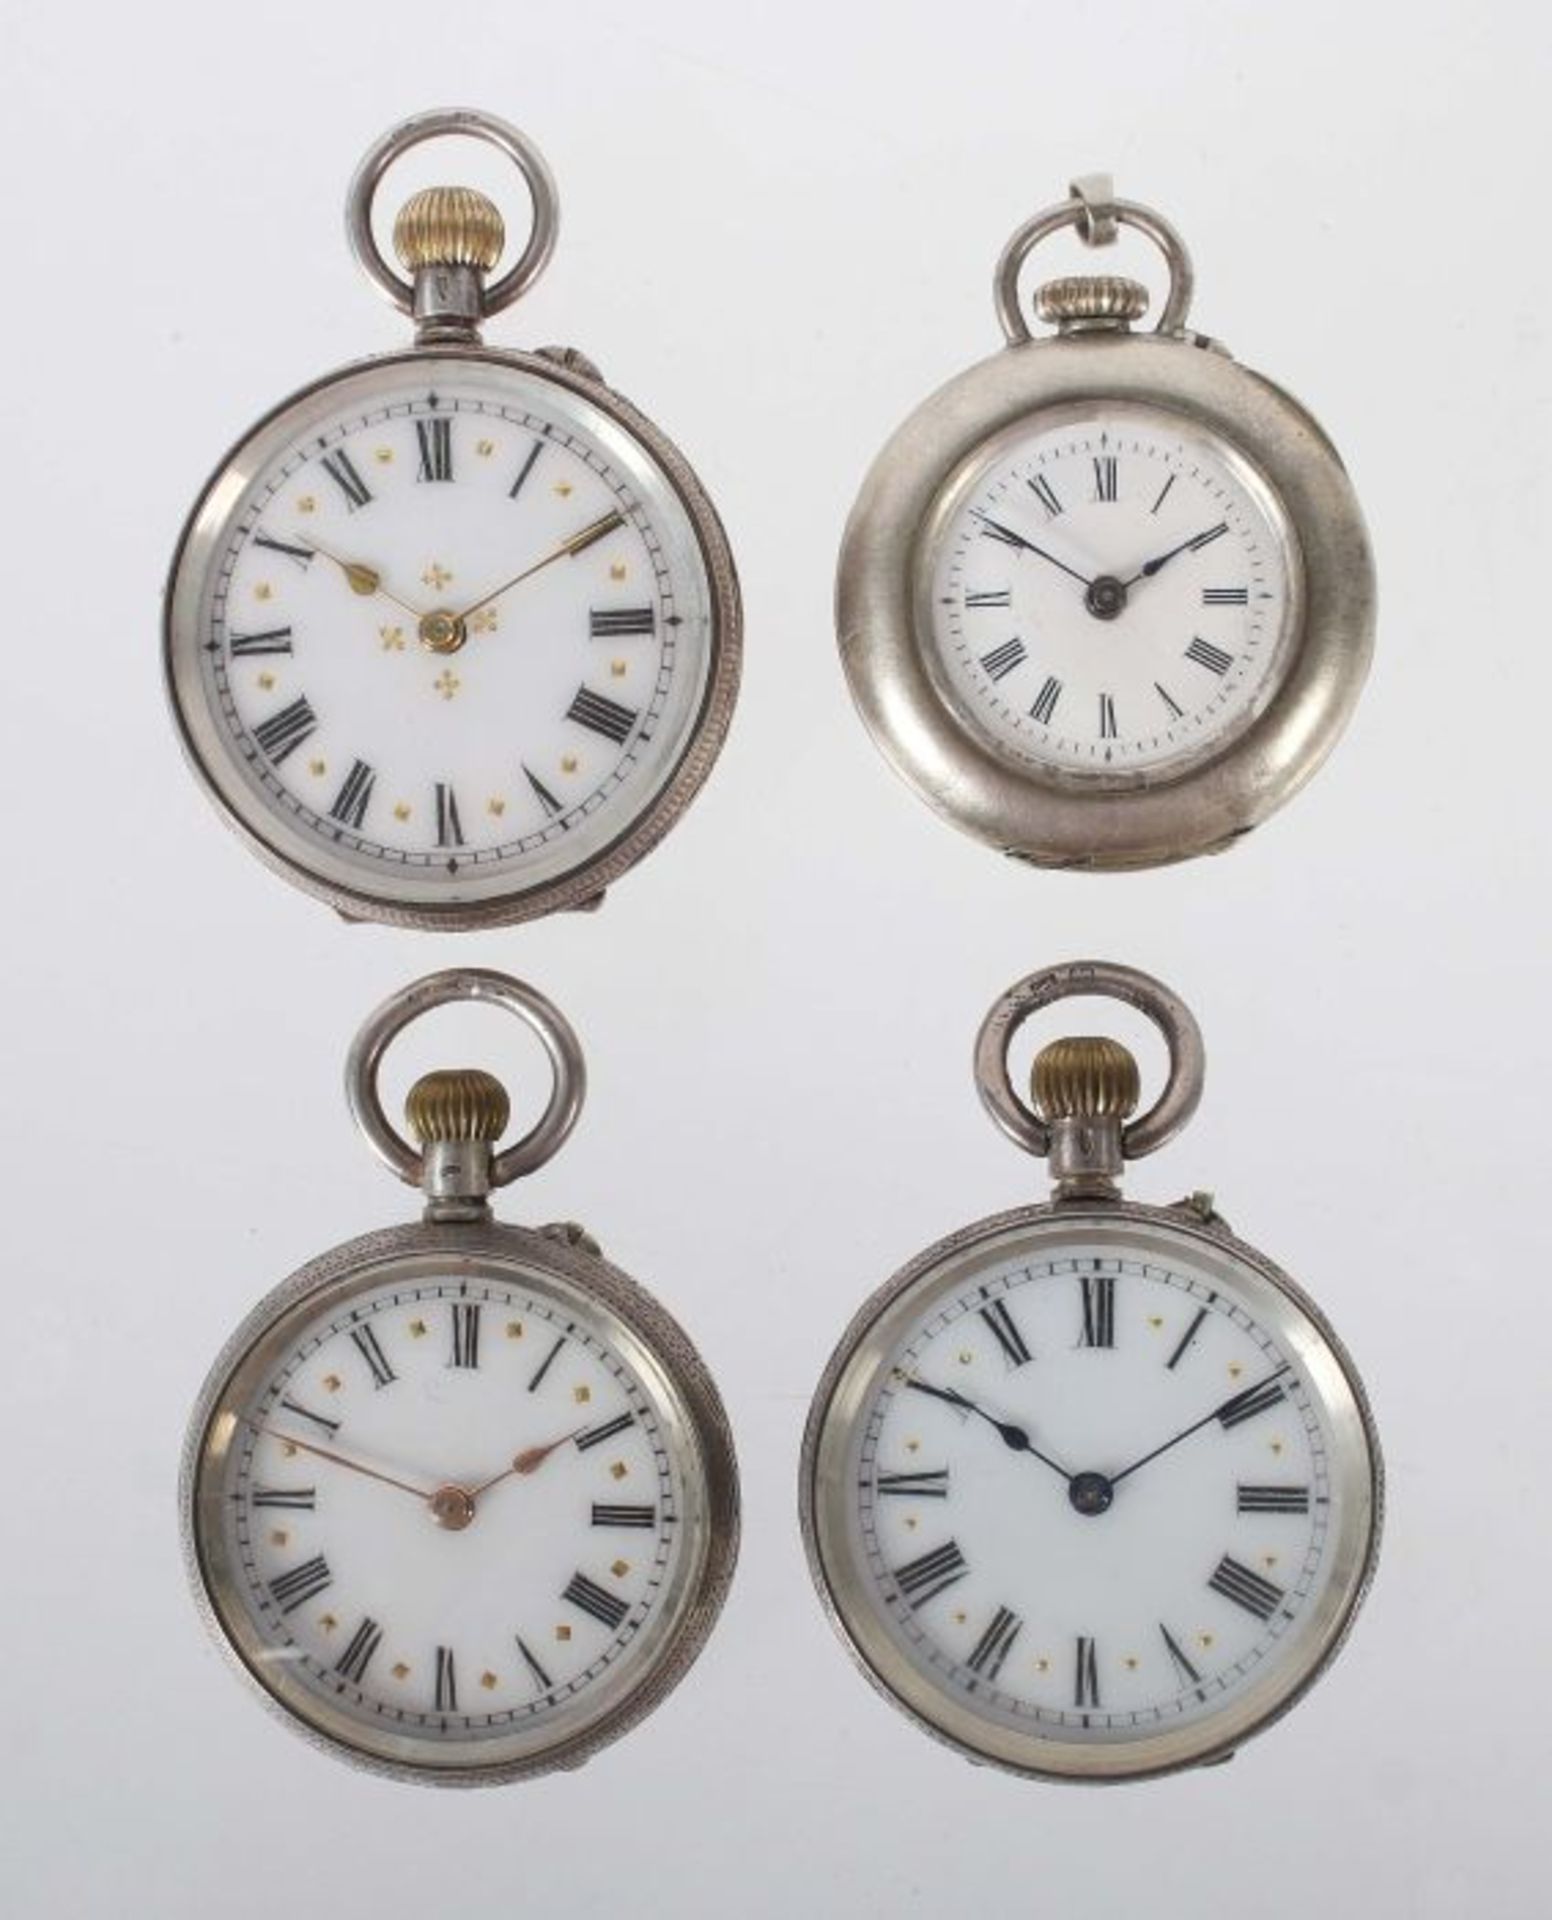 4 Damentaschenuhrenum 1900, meist Schweiz, Silber 800/935, je weißes Emaille-Zifferblatt mit